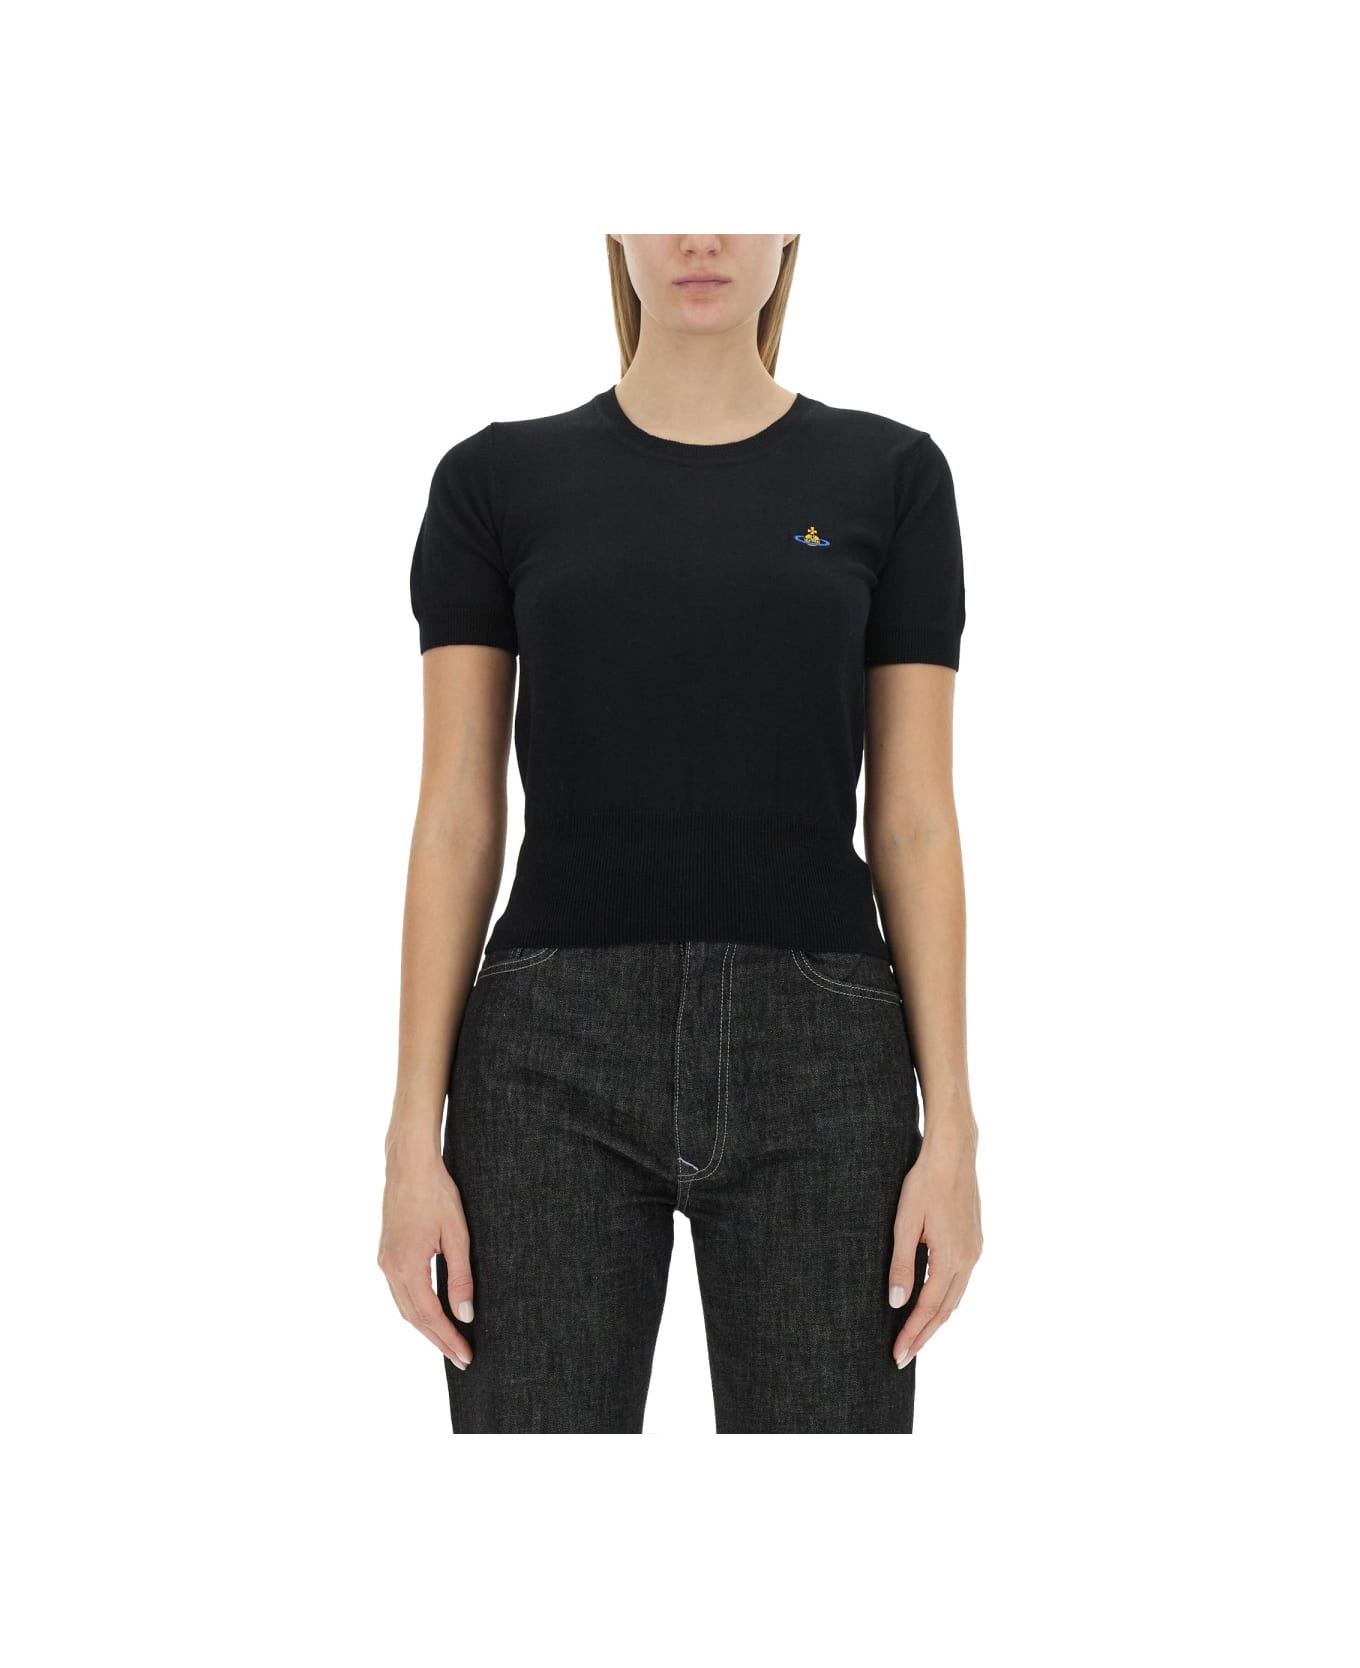 Vivienne Westwood "bea" Shirt - BLACK ニットウェア